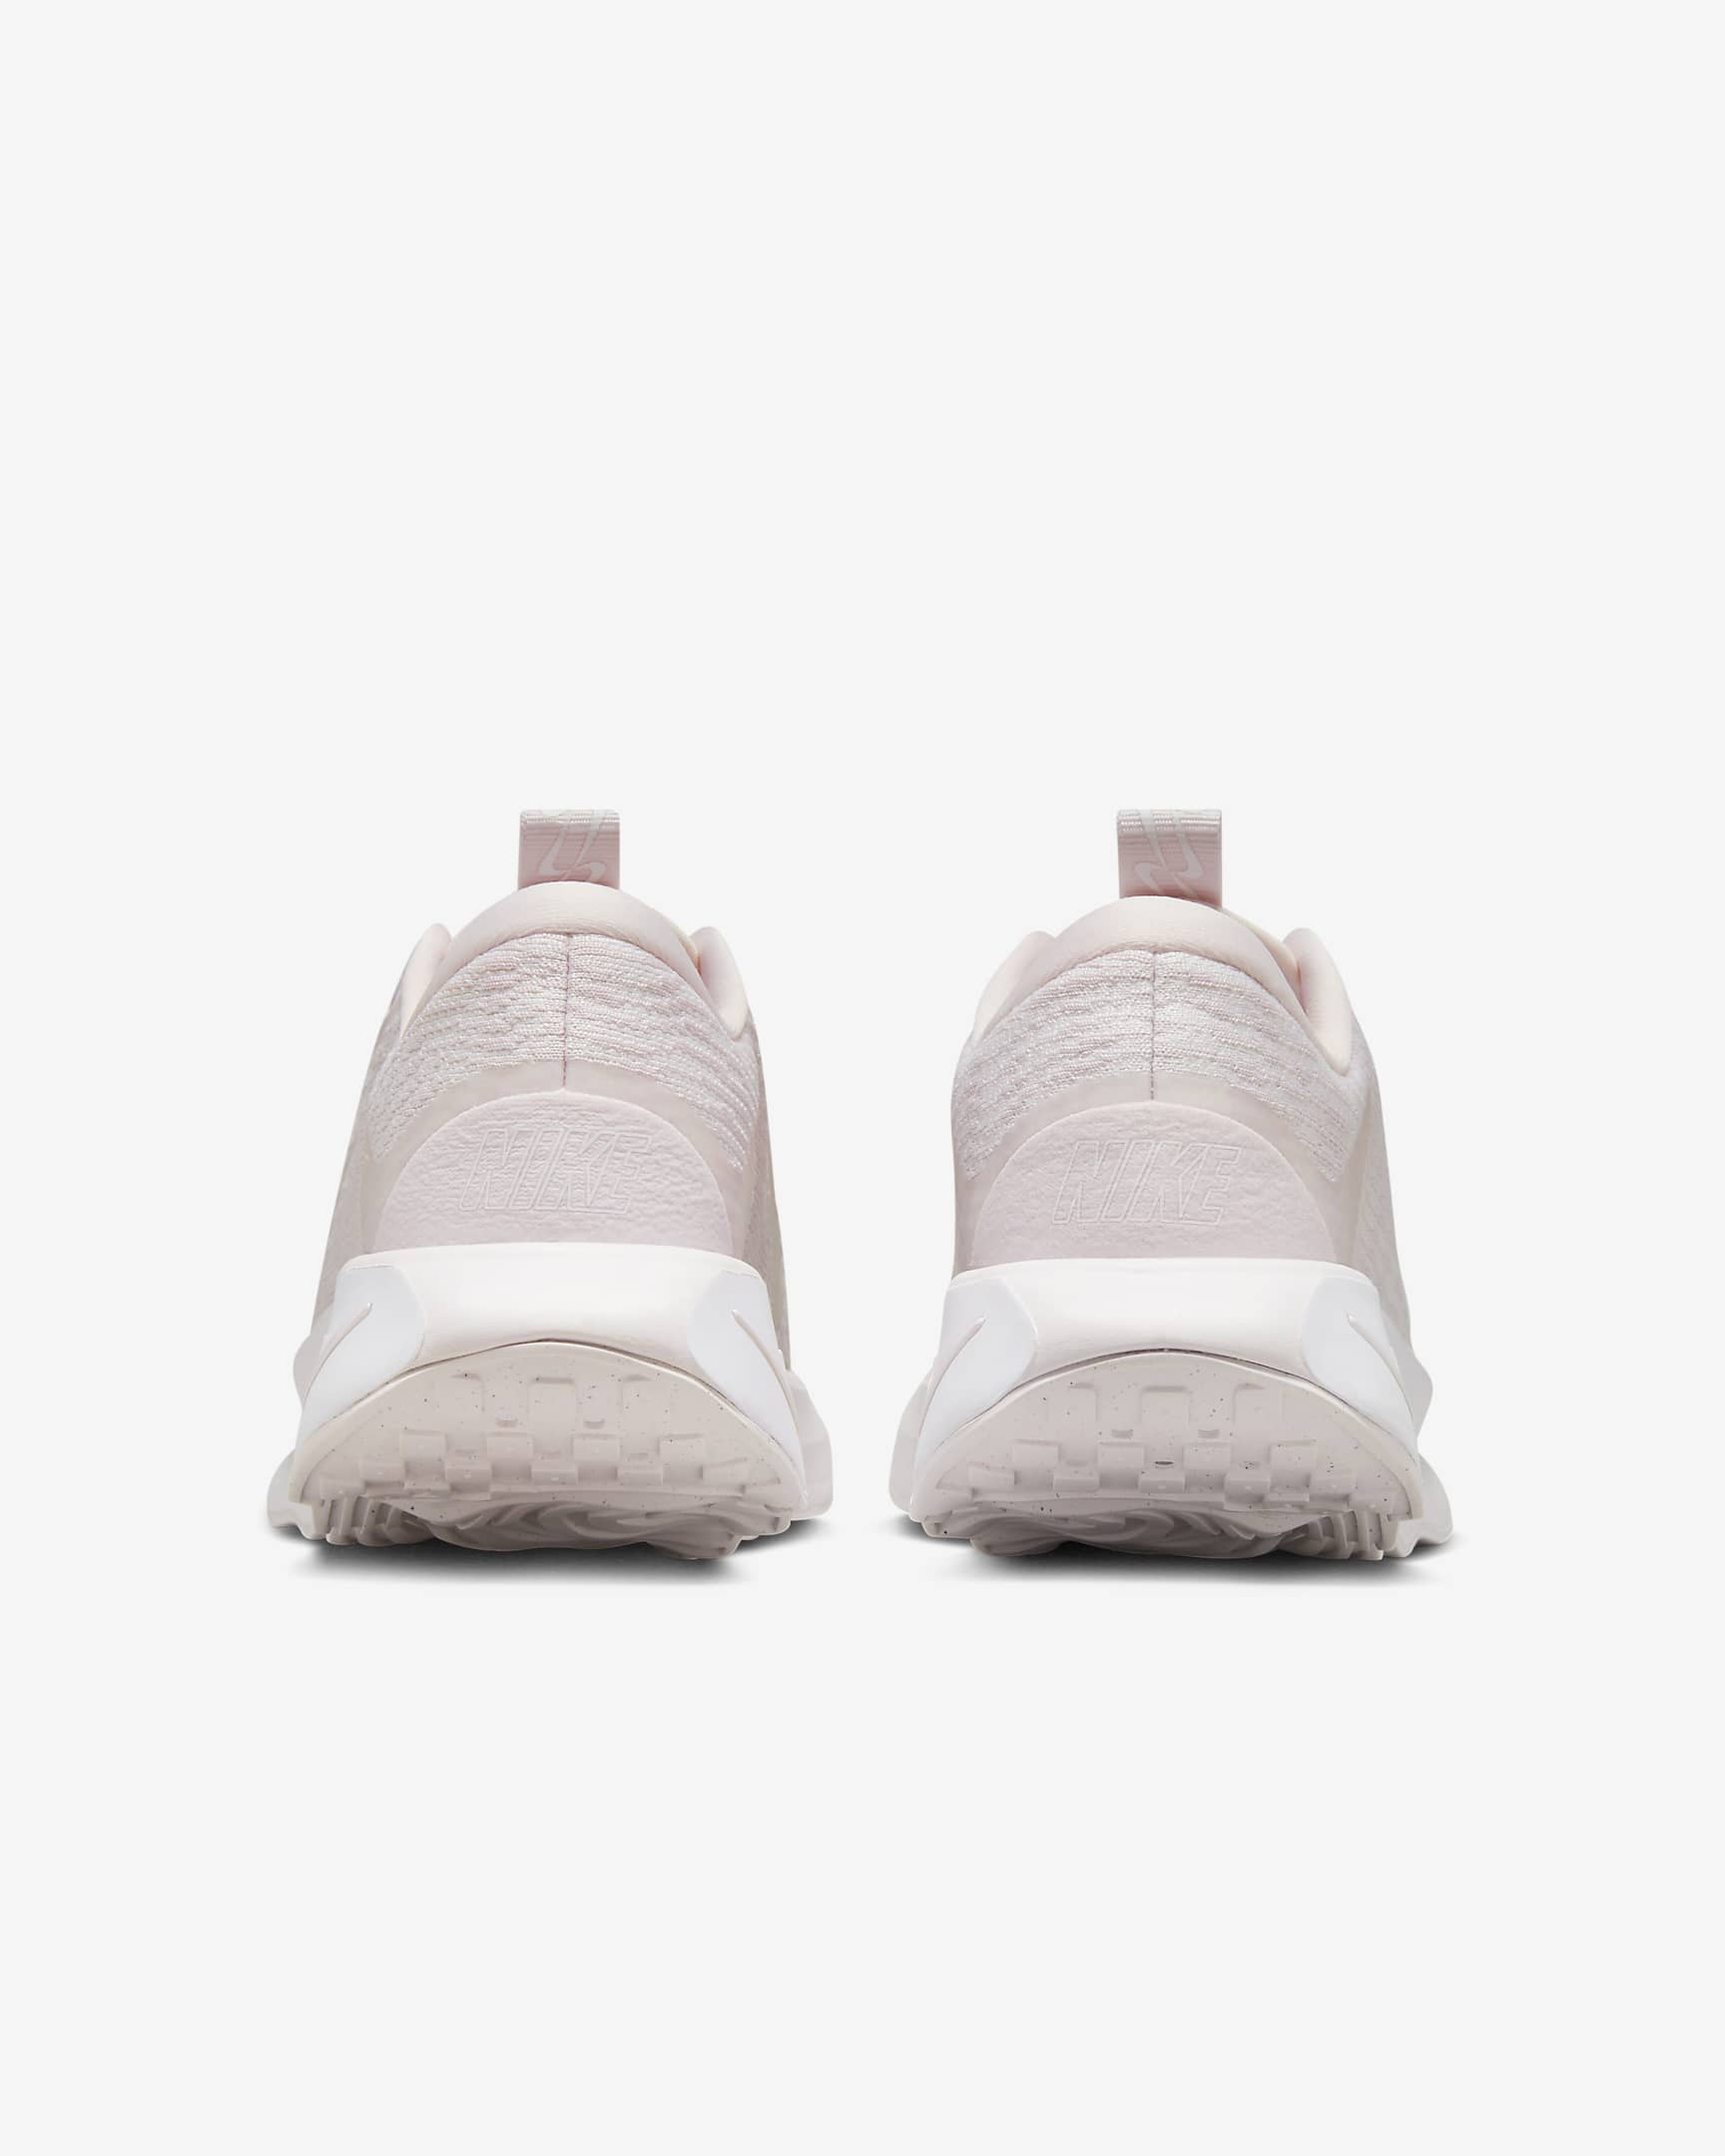 Chaussure de marche Nike Motiva pour femme - Pearl Pink/Blanc